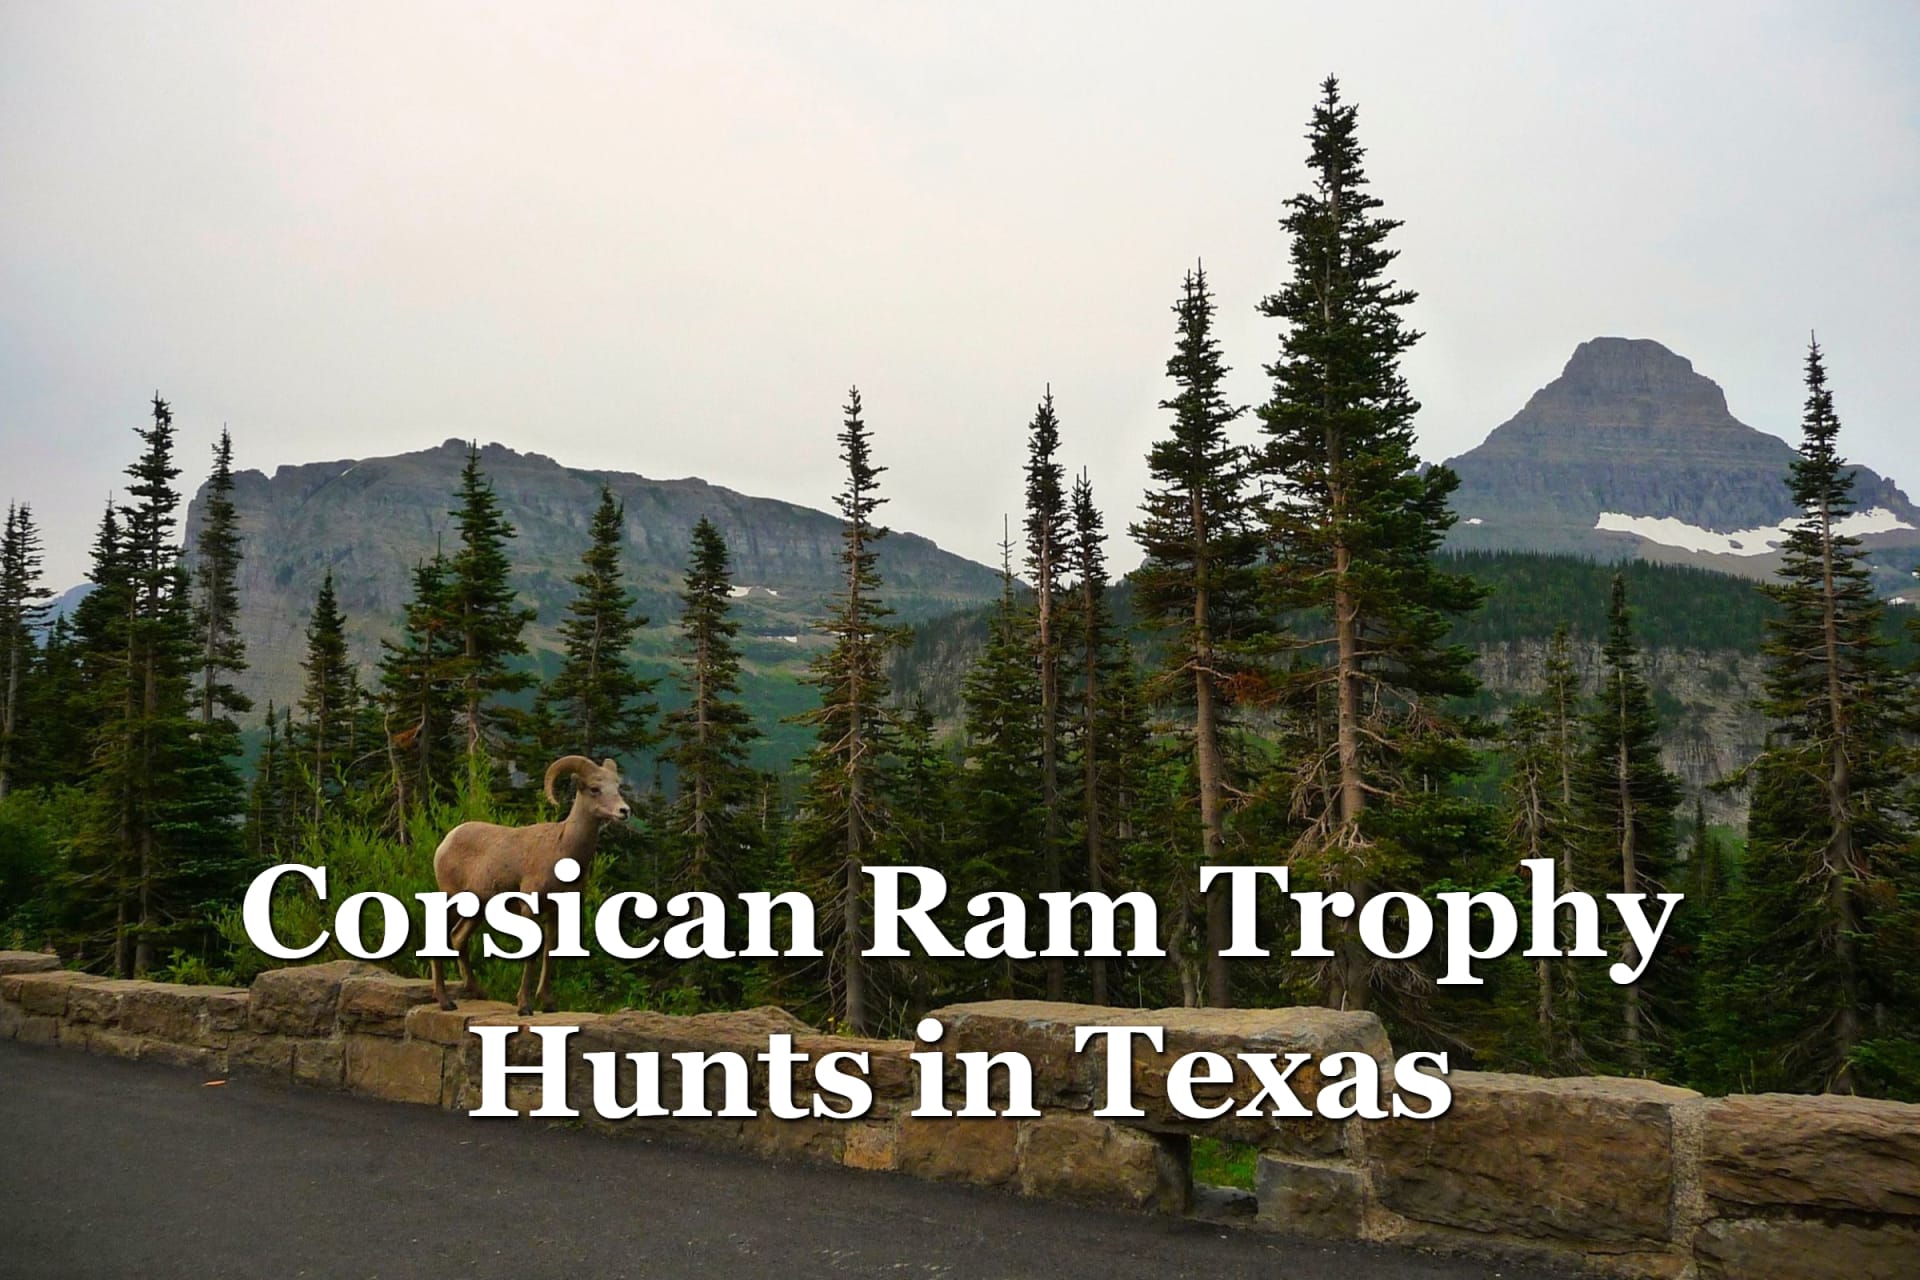 Corsican Ram Trophy Hunts in Texas